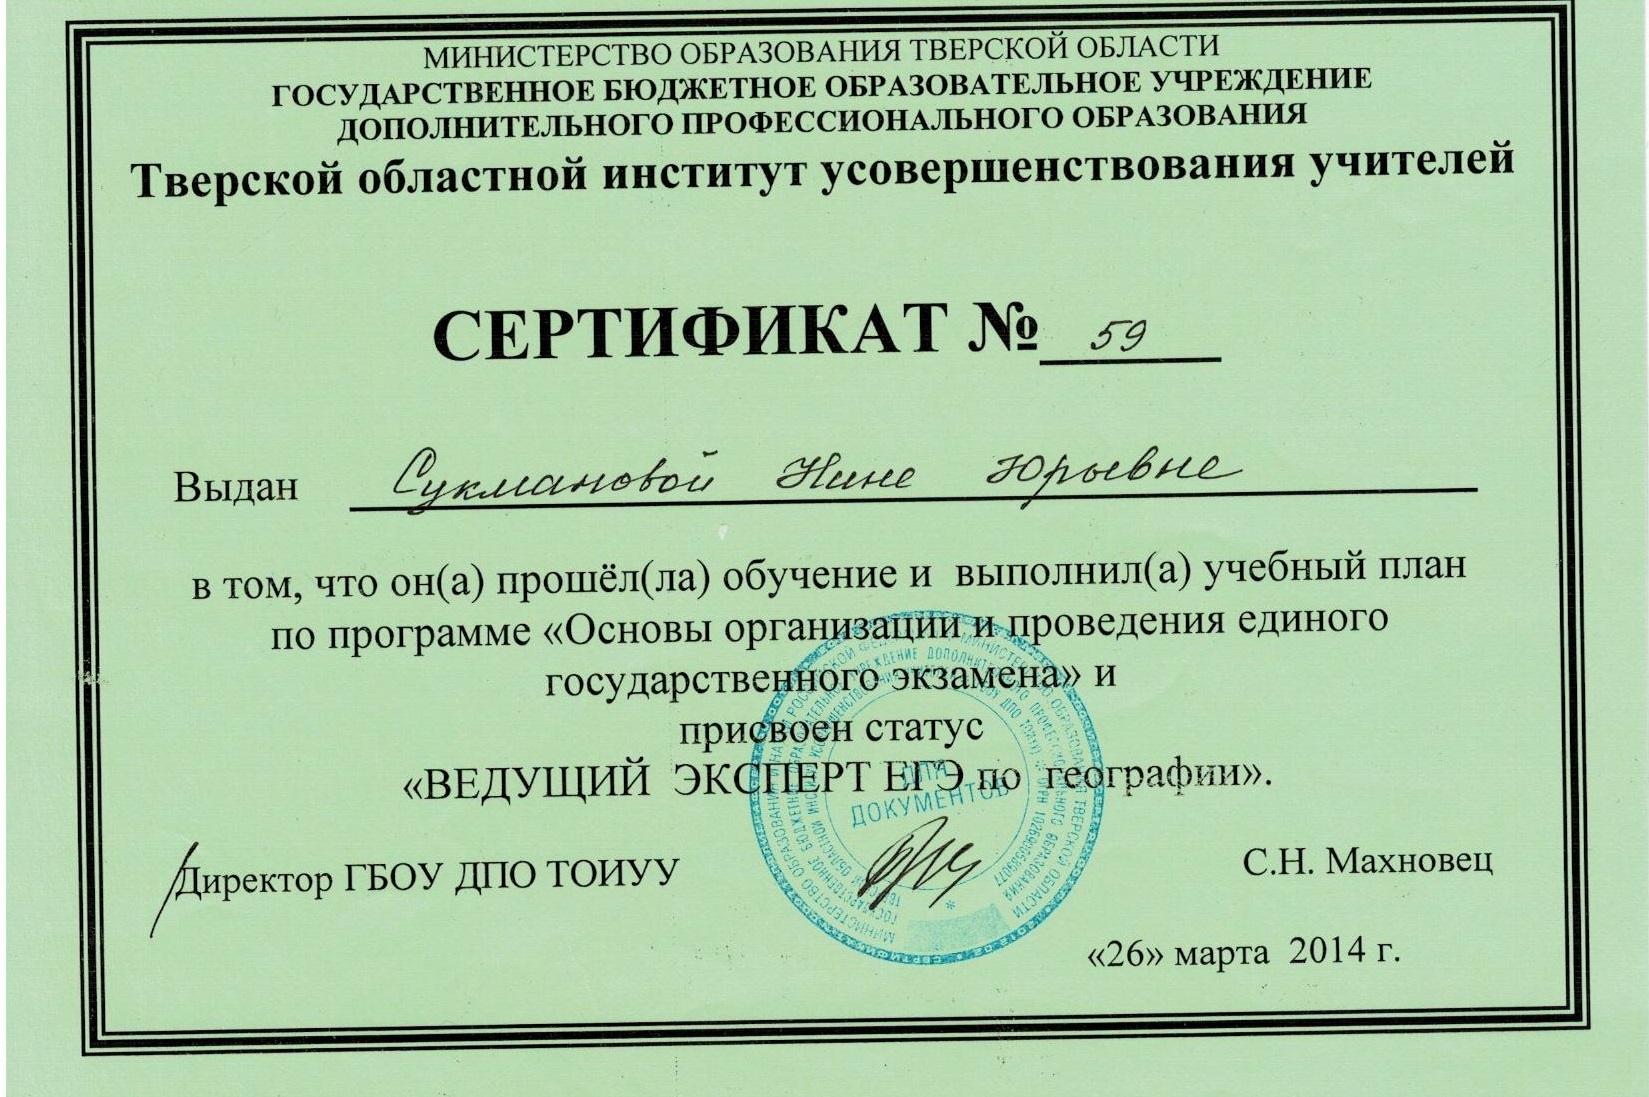 сертификат  эксперта егэ 2014 001.jpg